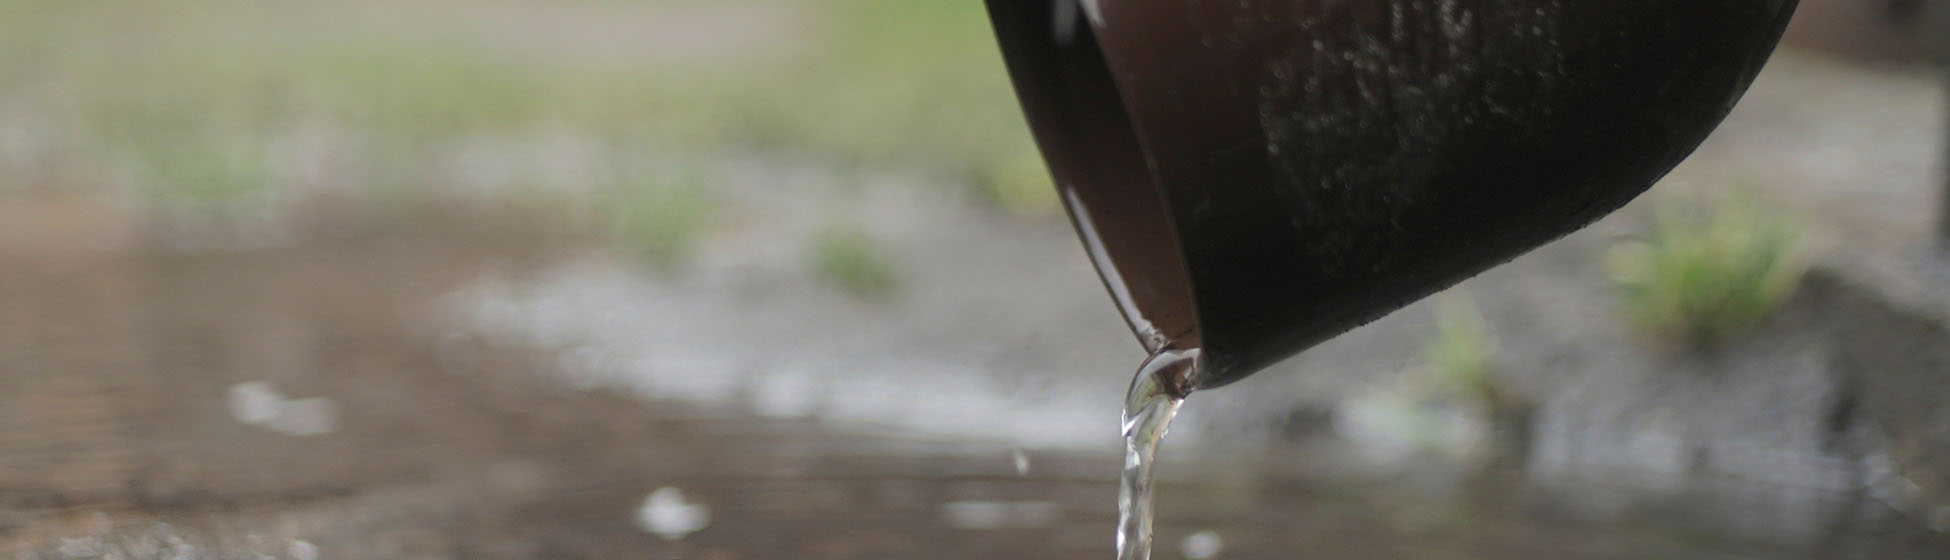 Installation collecteur eau de pluie